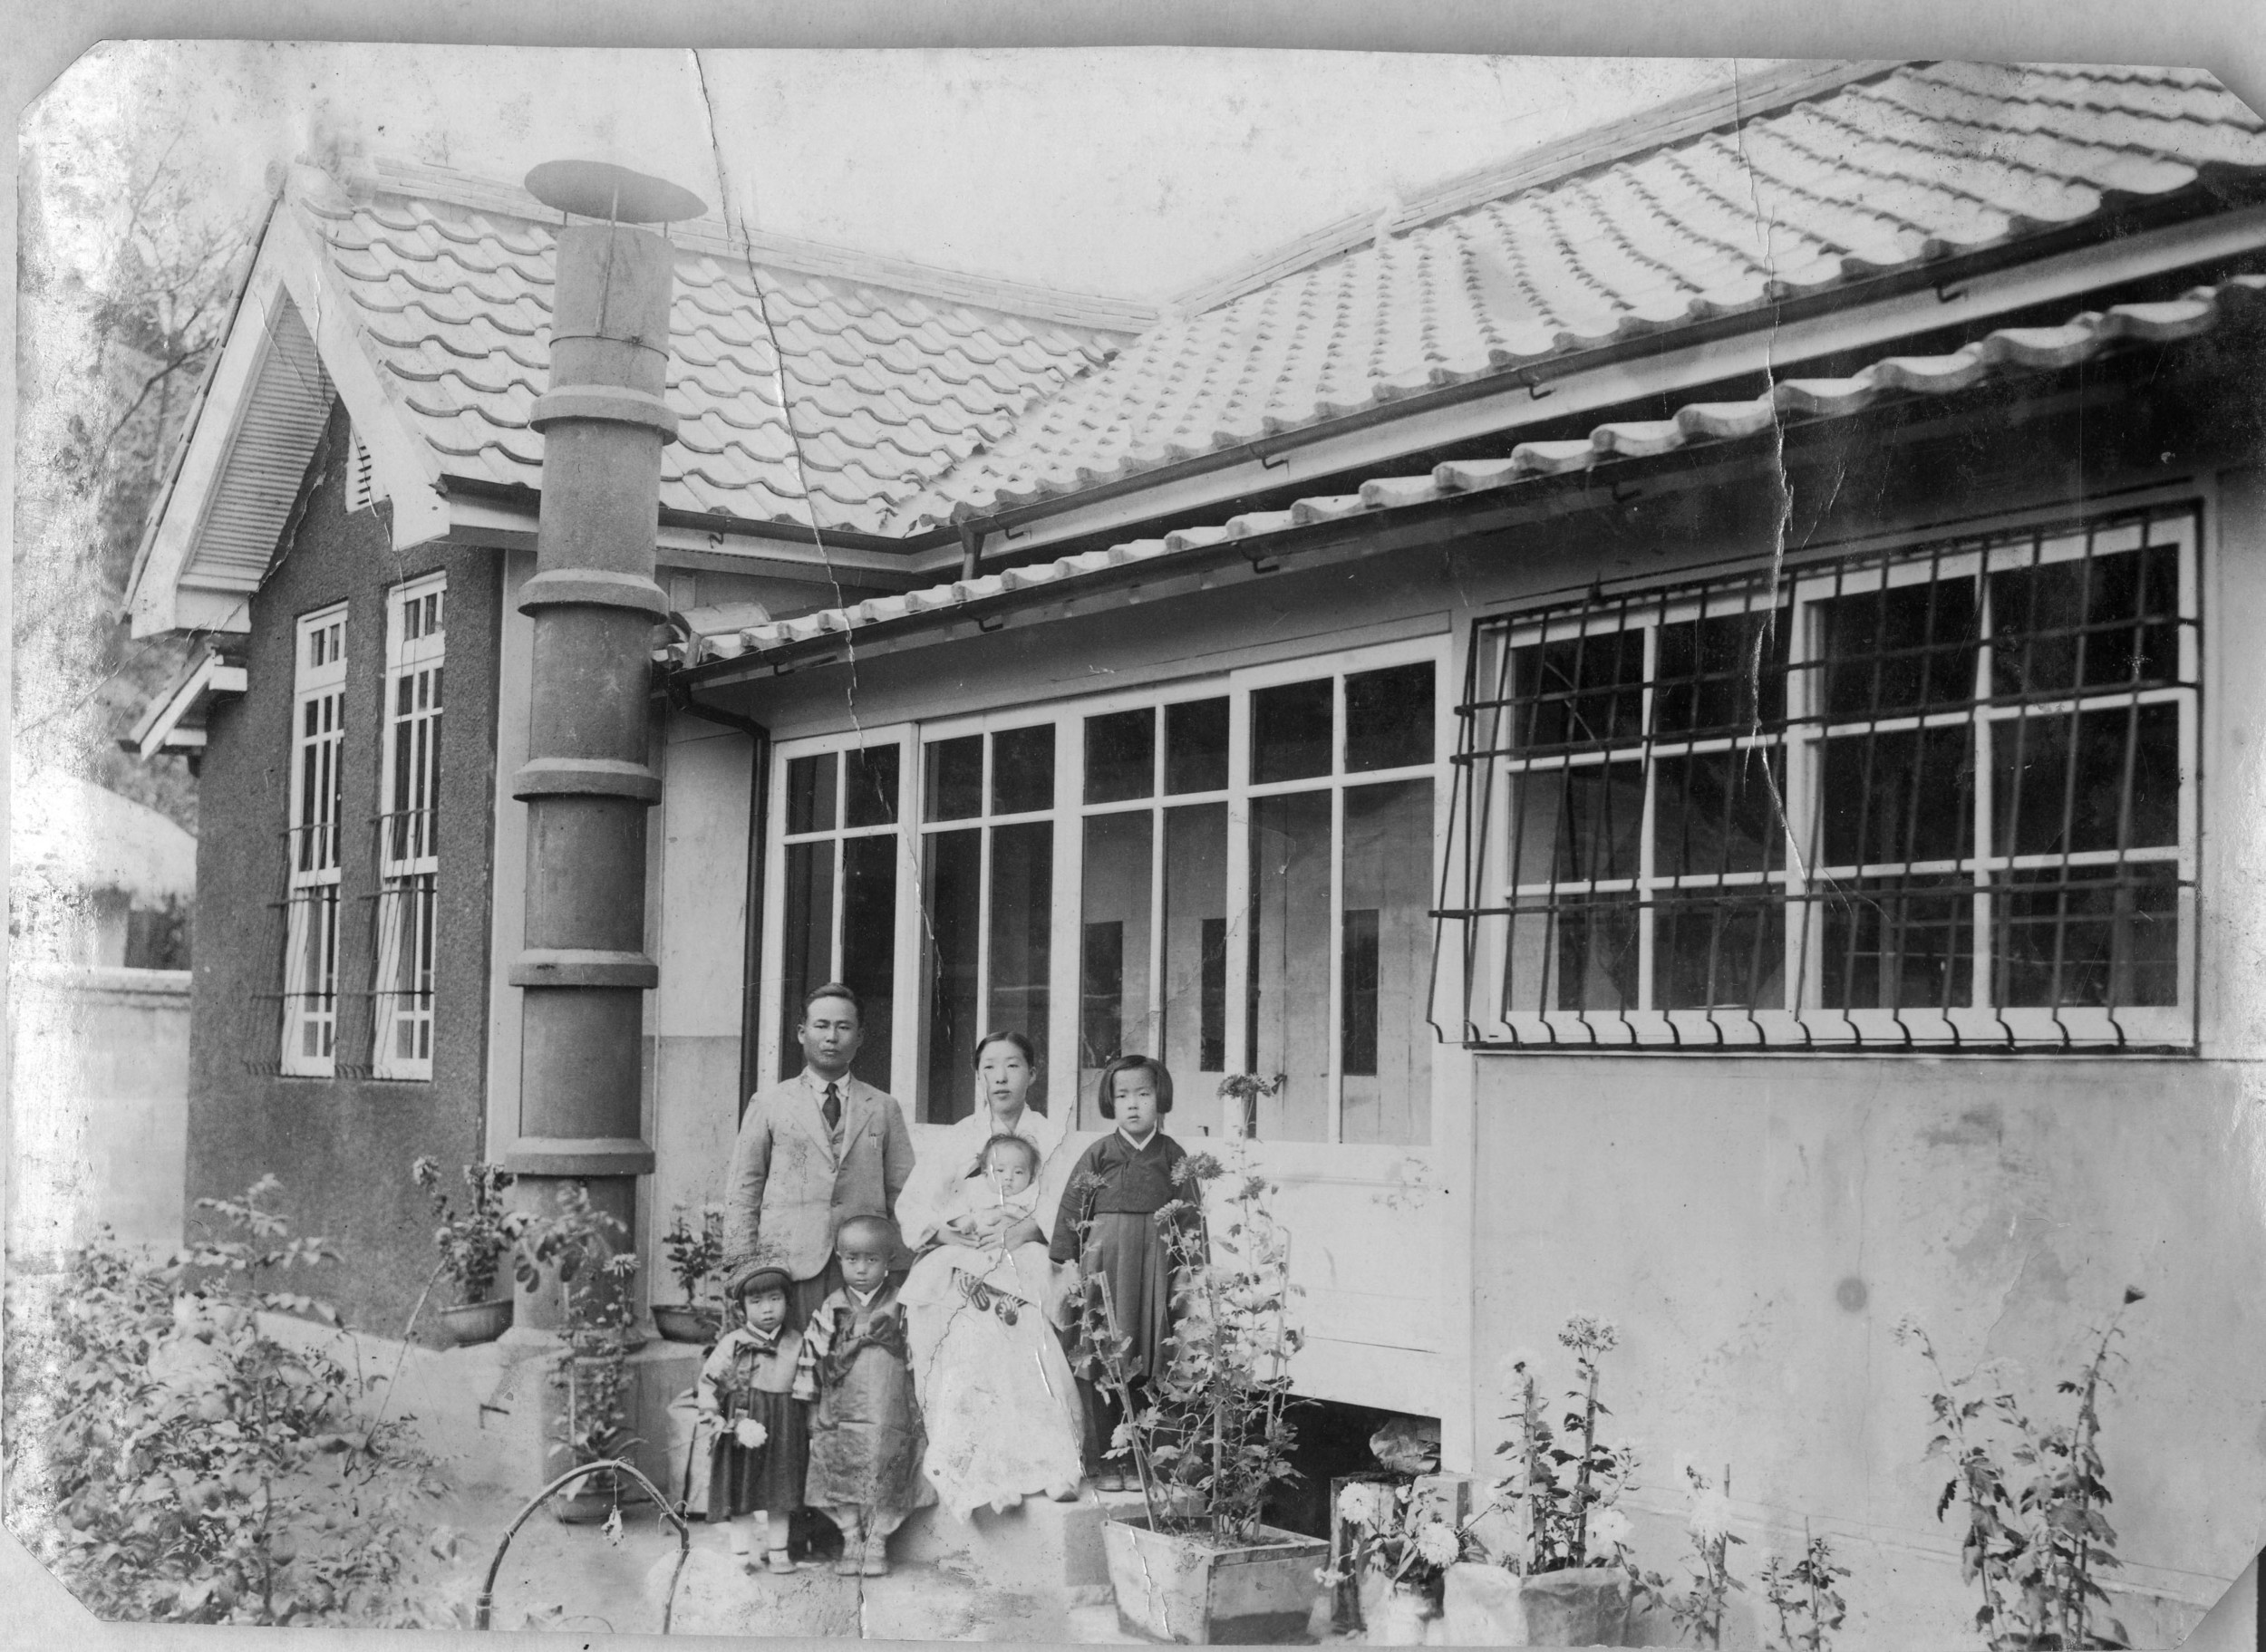 In Taegu, circa 1936